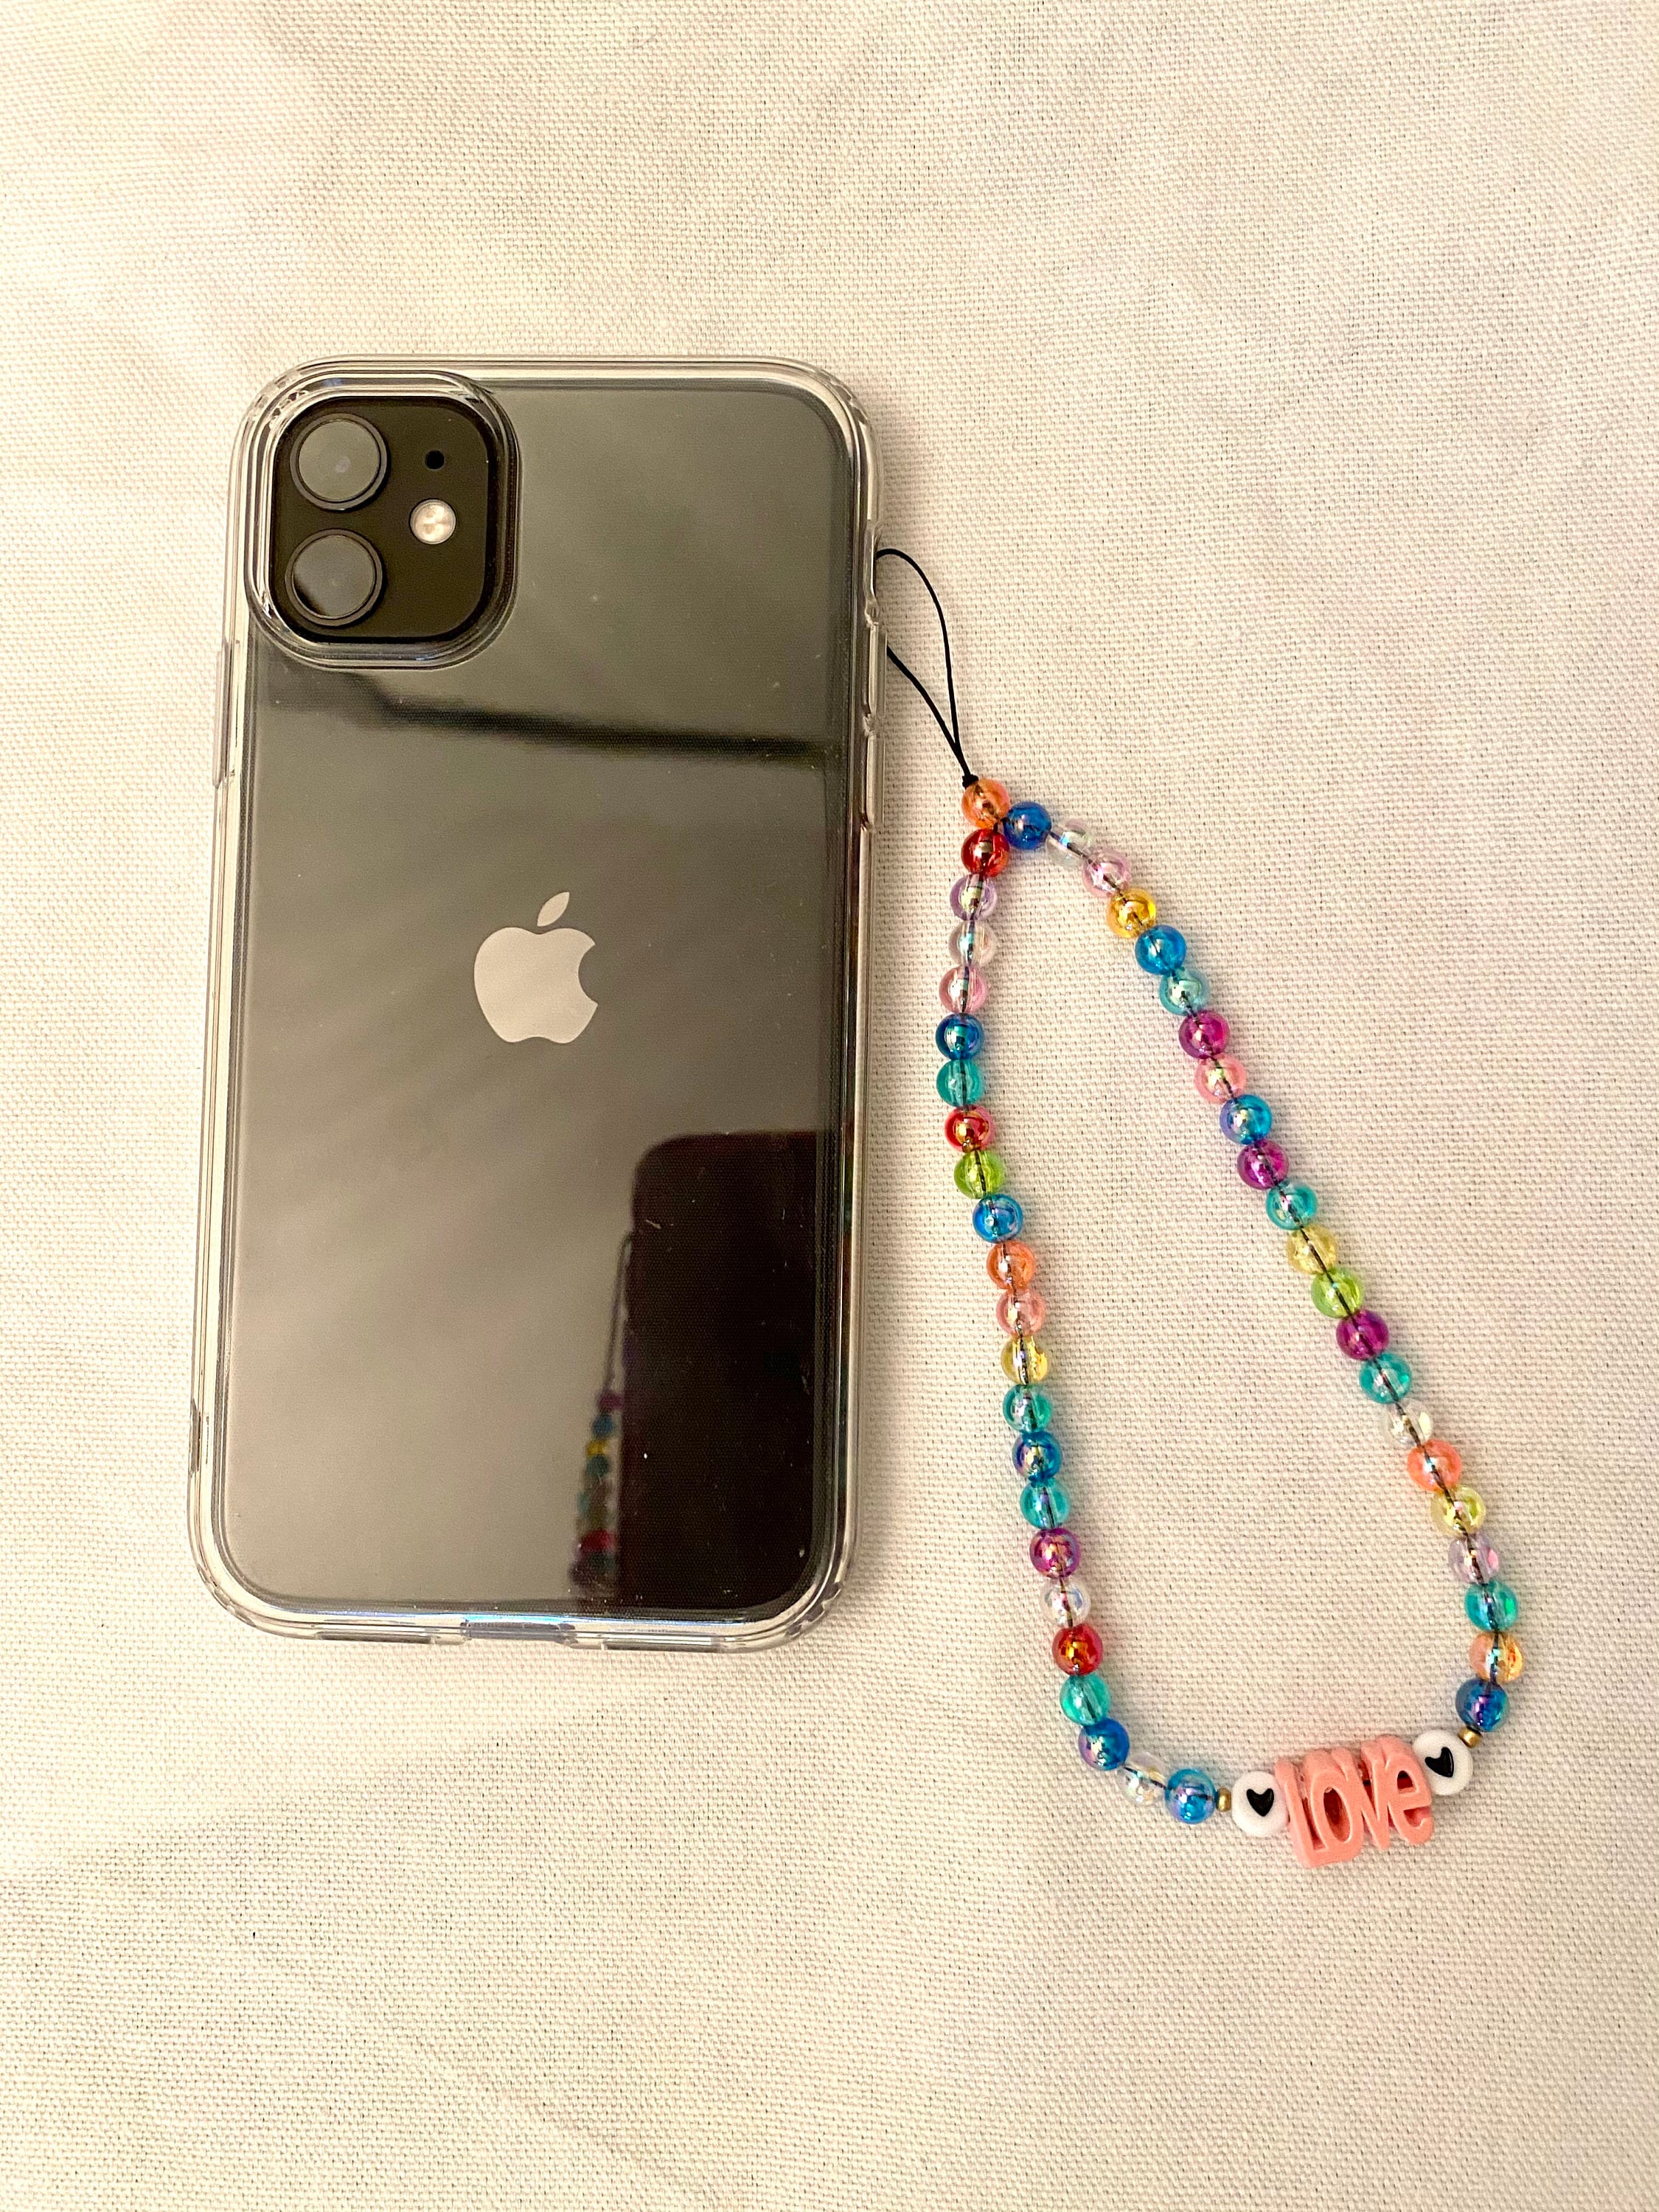 LOVE phone jewelry | Etsy